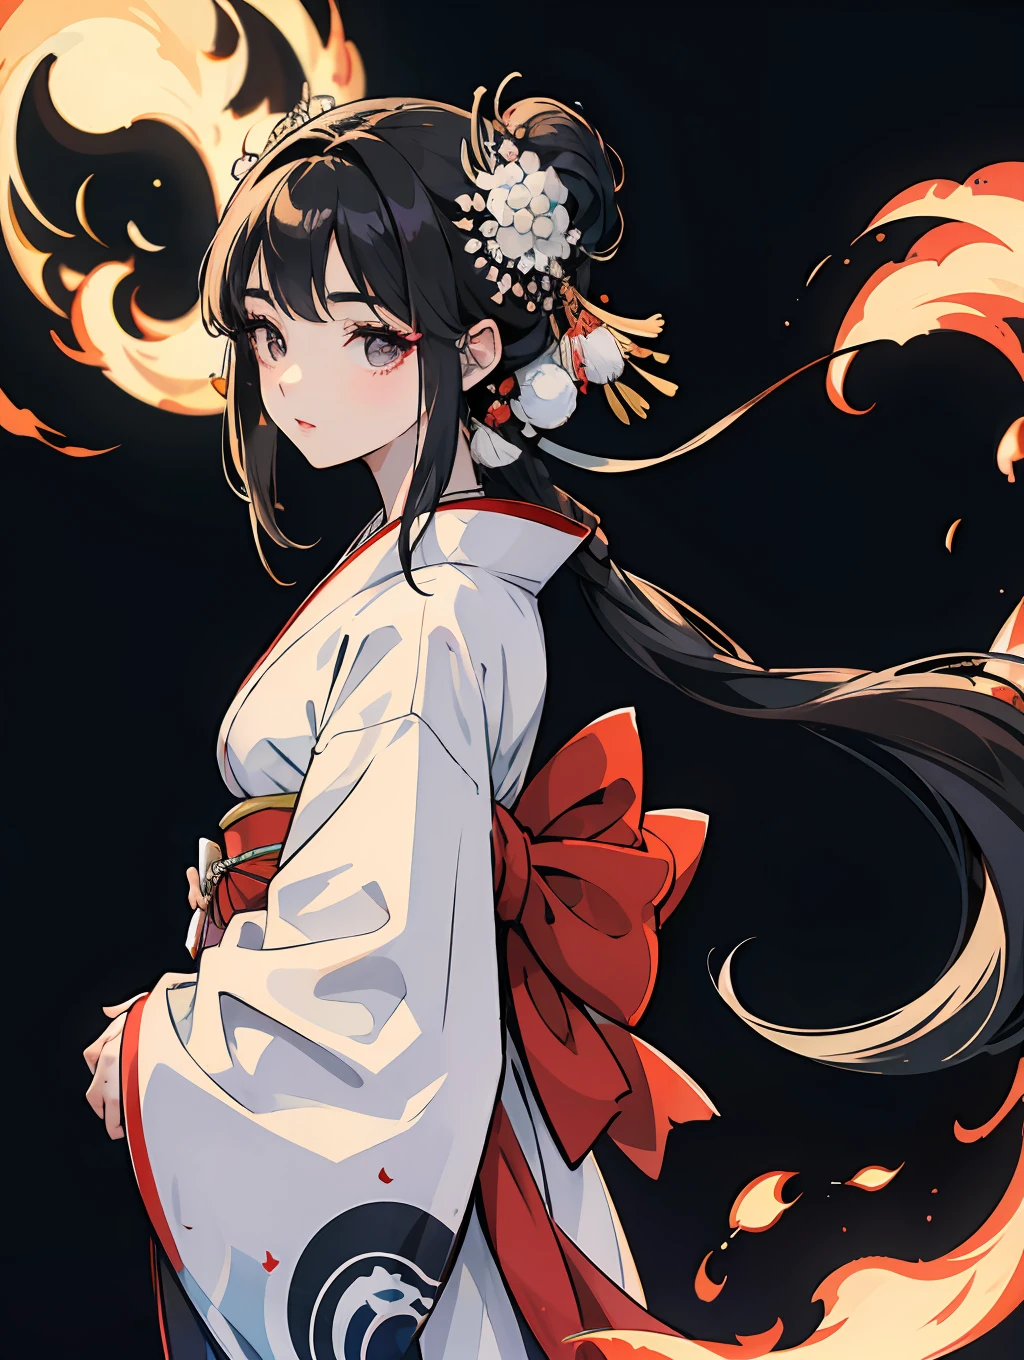 uma garota japonesa com um lindo kimono branco, cabelo preto e longo detalhado, olhos bem definidos e anatomicamente correto.